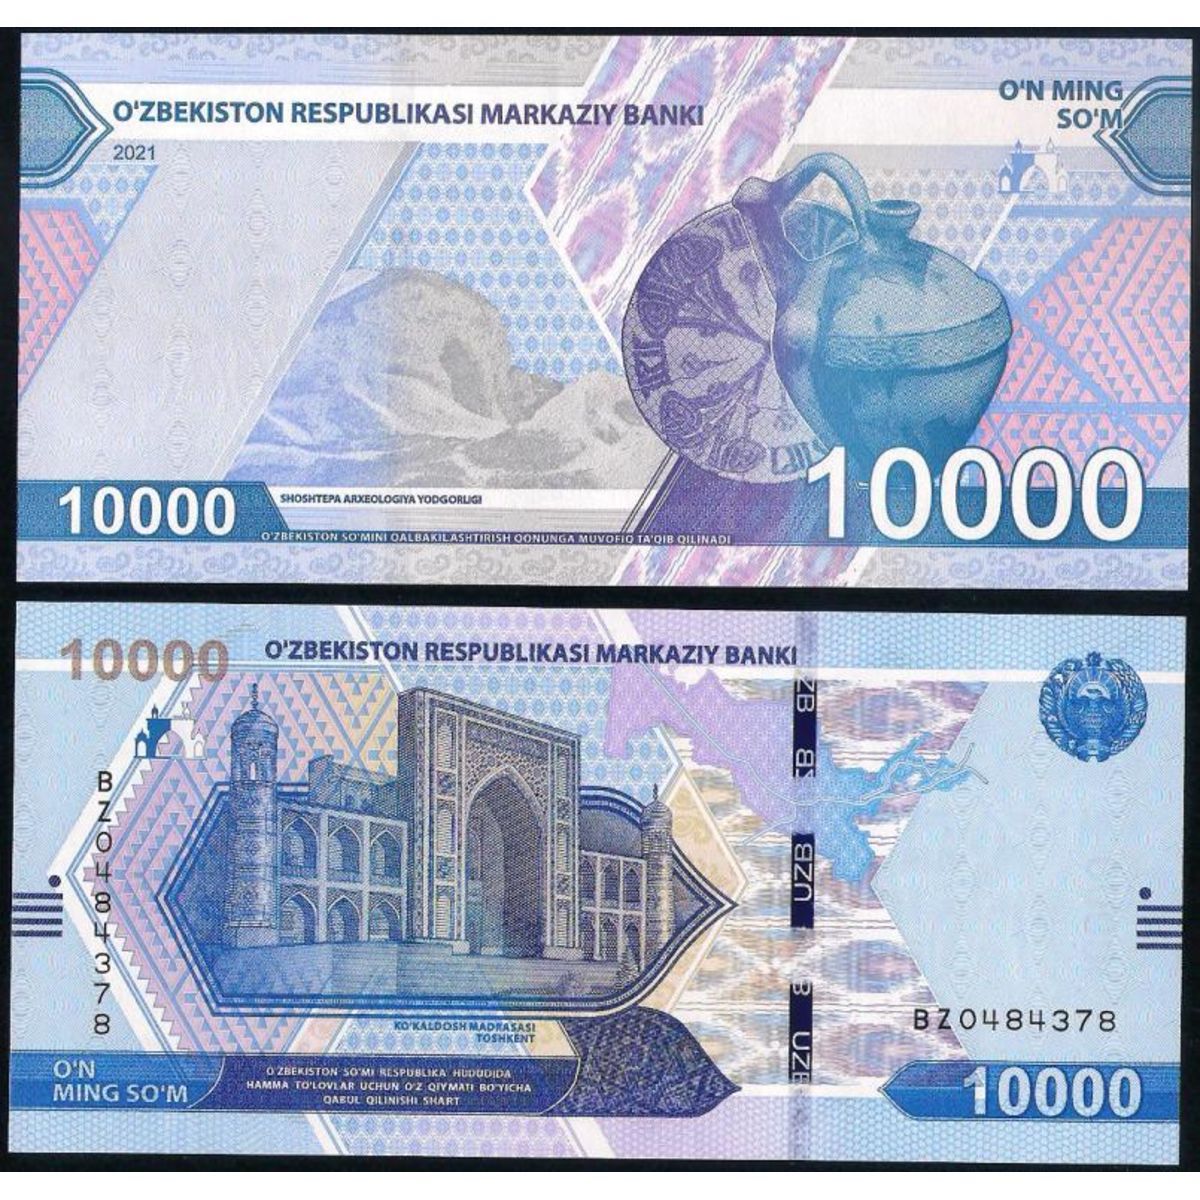 20000 узбекских. Узбекистан 5000 сум 2021 года. Банкноты Узбекистана. Купюра Узбекистана 10000. Банкнота сум.